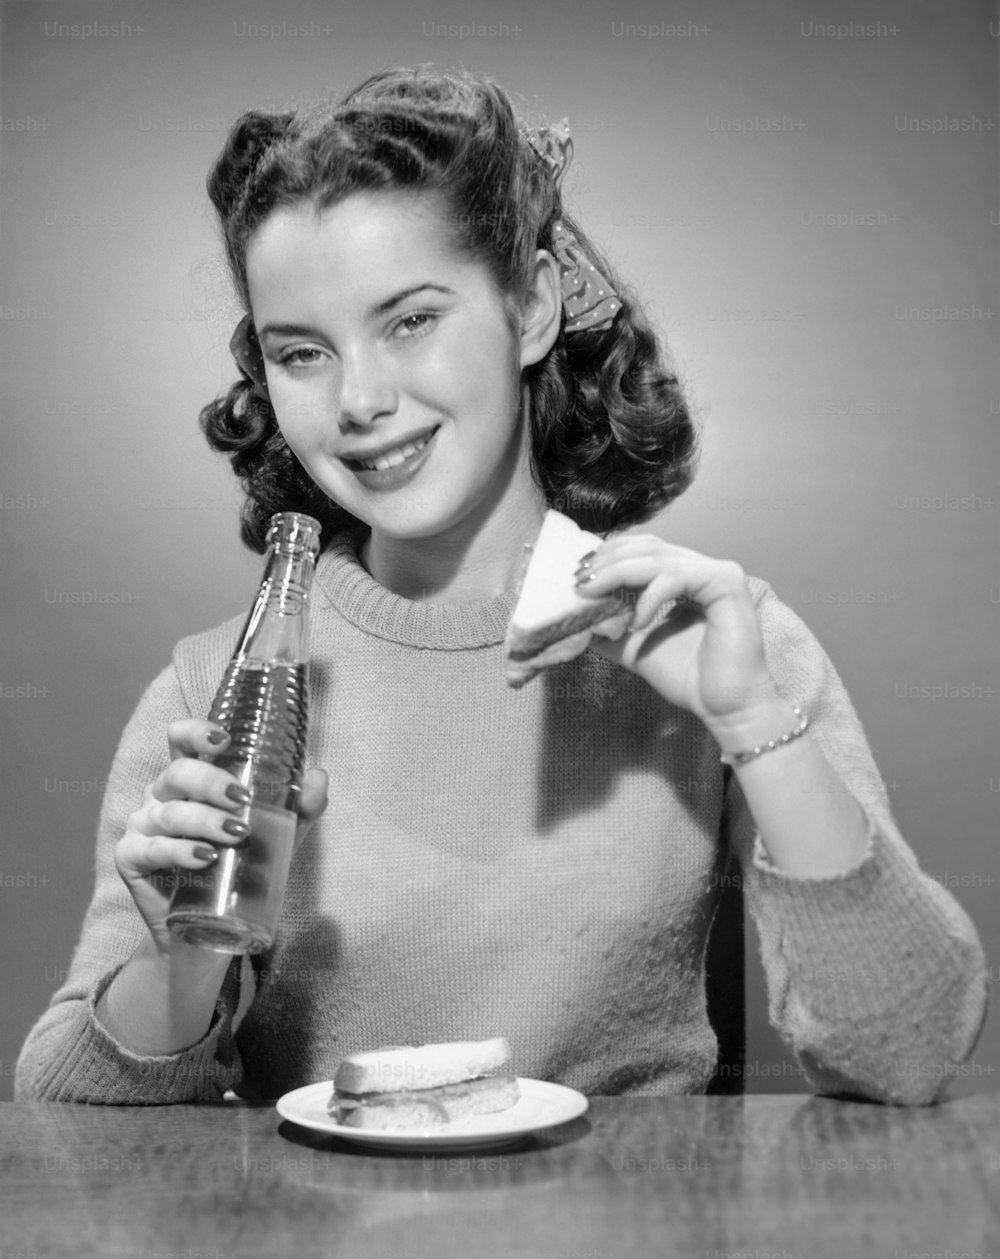 ÉTATS-UNIS - Circa 1950s : Adolescente ayant un soda et un sandwich.